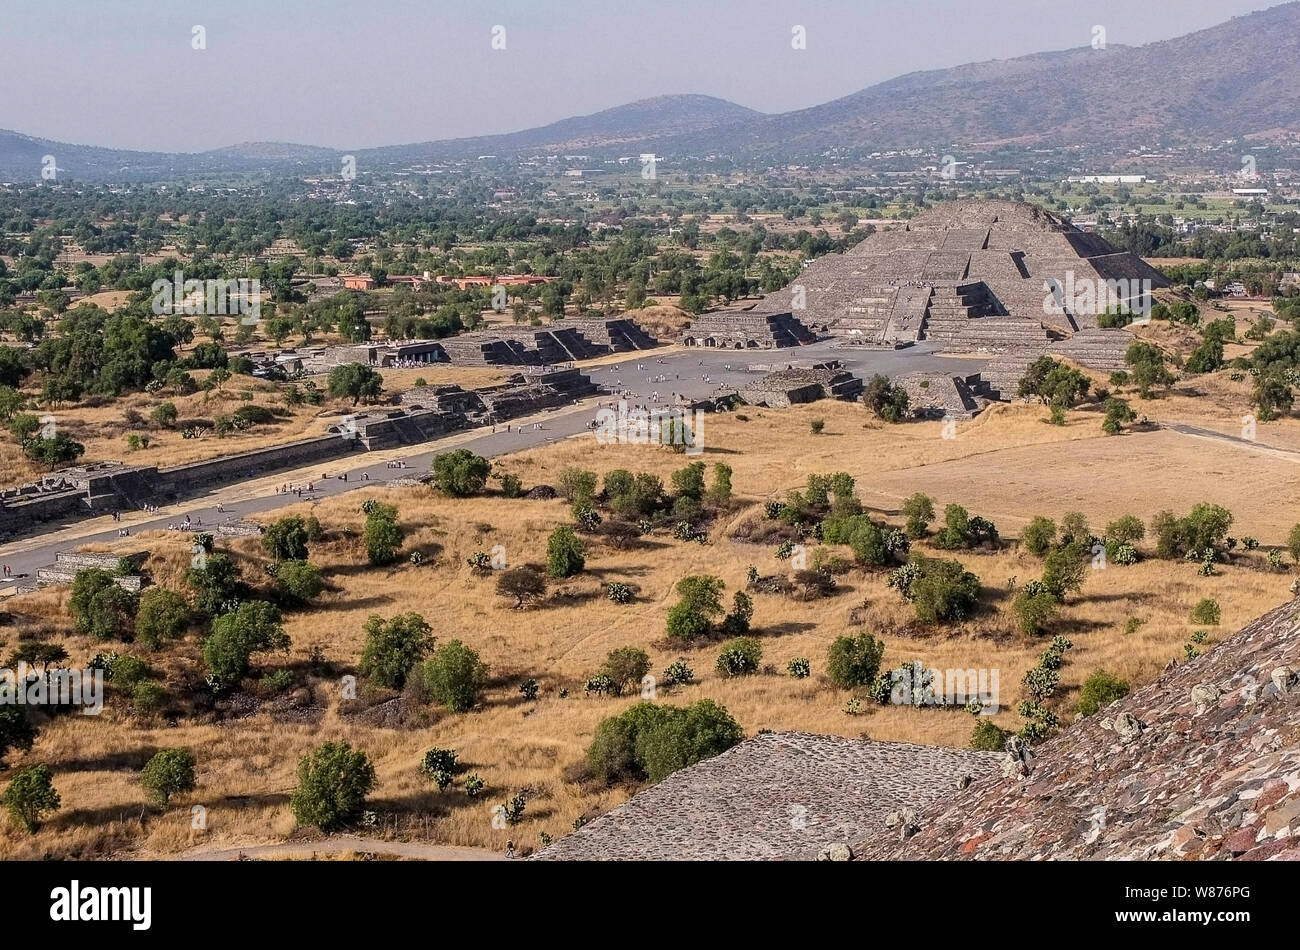 Teotihuacan, war ein Präkolumbianischen mesoamerikanischen Stadt im Becken von Mexiko, 30 Meilen (48 km) nordöstlich des heutigen Mexiko Stadt, die heute als Standort für viele der architektonisch bedeutende Mittelamerikanische Pyramiden, die in der Pre-kolumbianischen Amerika bekannt ist. Abgesehen von den Pyramiden, Teotihuacan ist auch anthropologisch erhebliche für seine komplexen, multi-Wohn Familie Verbindungen, die Allee von den Toten, und der kleine Teil der lebendigen Wandmalereien, die außergewöhnlich gut erhalten. Zusätzlich Teotihuacan erzeugt eine dünne orange Keramik Stil, die durch Verbreitung Stockfoto